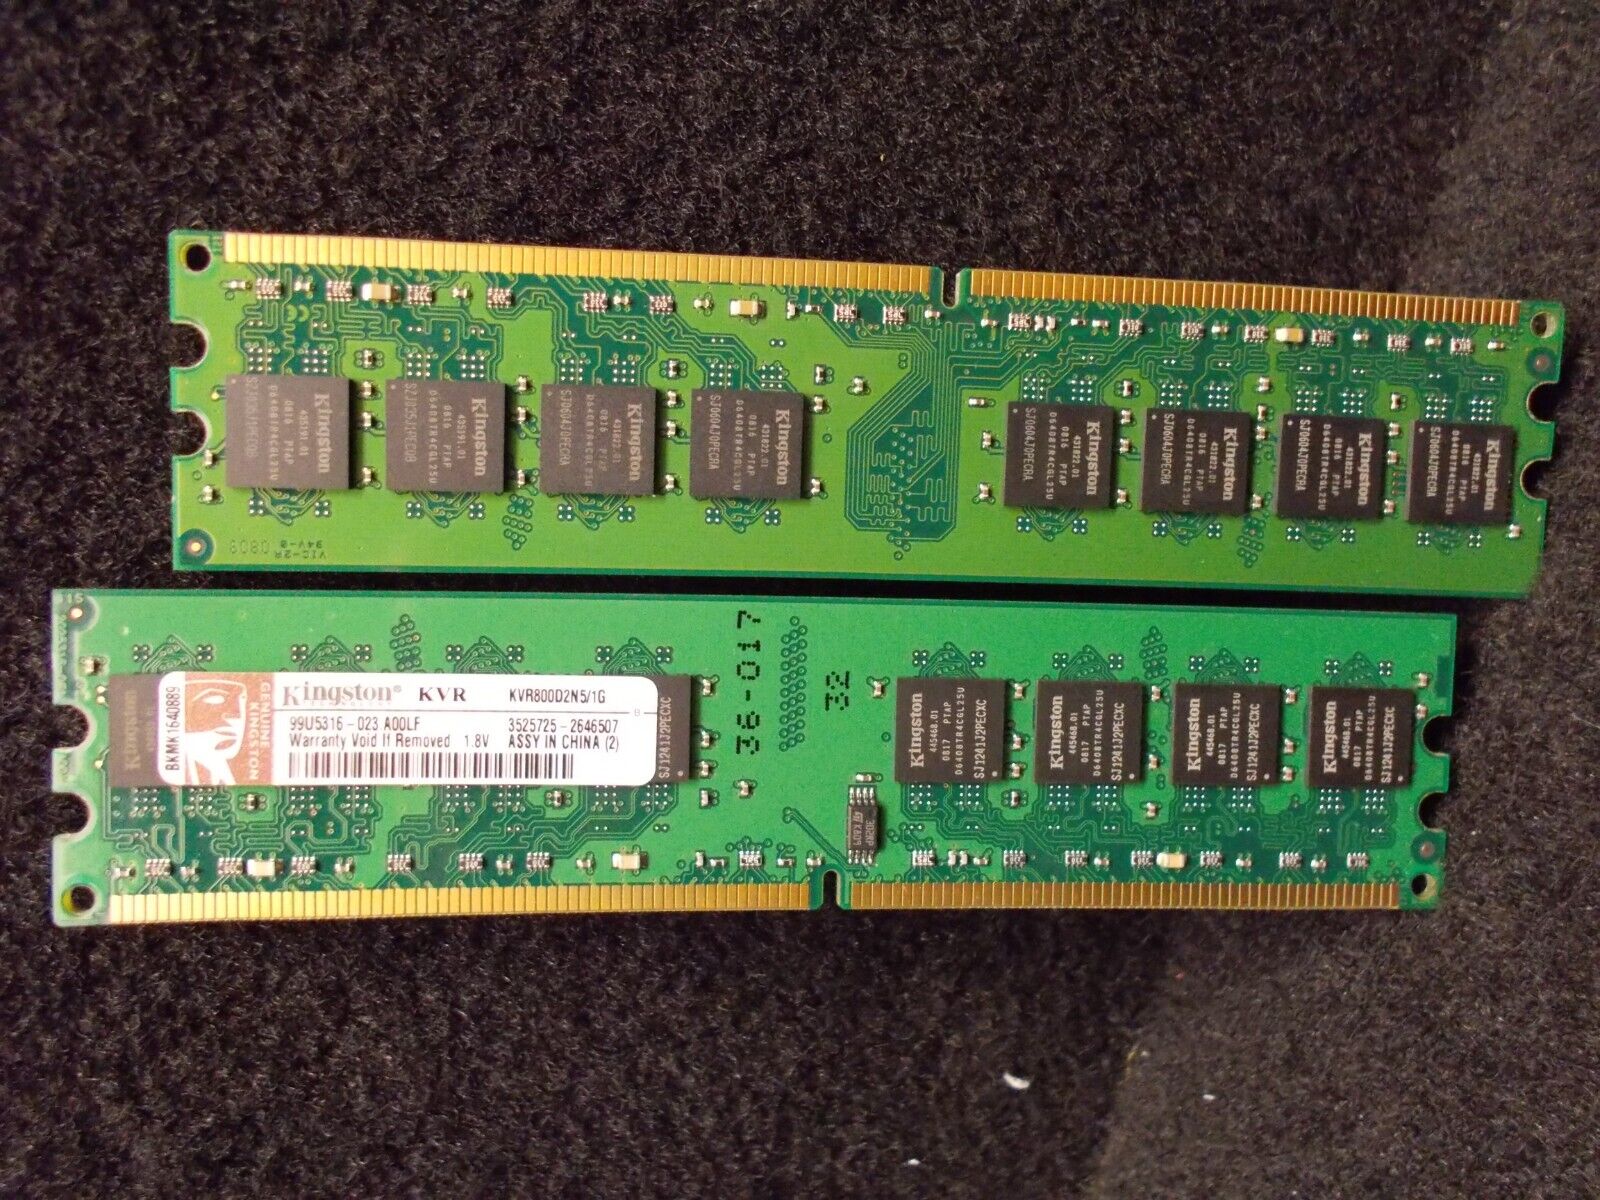 2x 1 GB DDR2-RAM, PC2-6400U, Non-Ecc, Kingston KVR800D2N5/0.0353oz, 99U531.